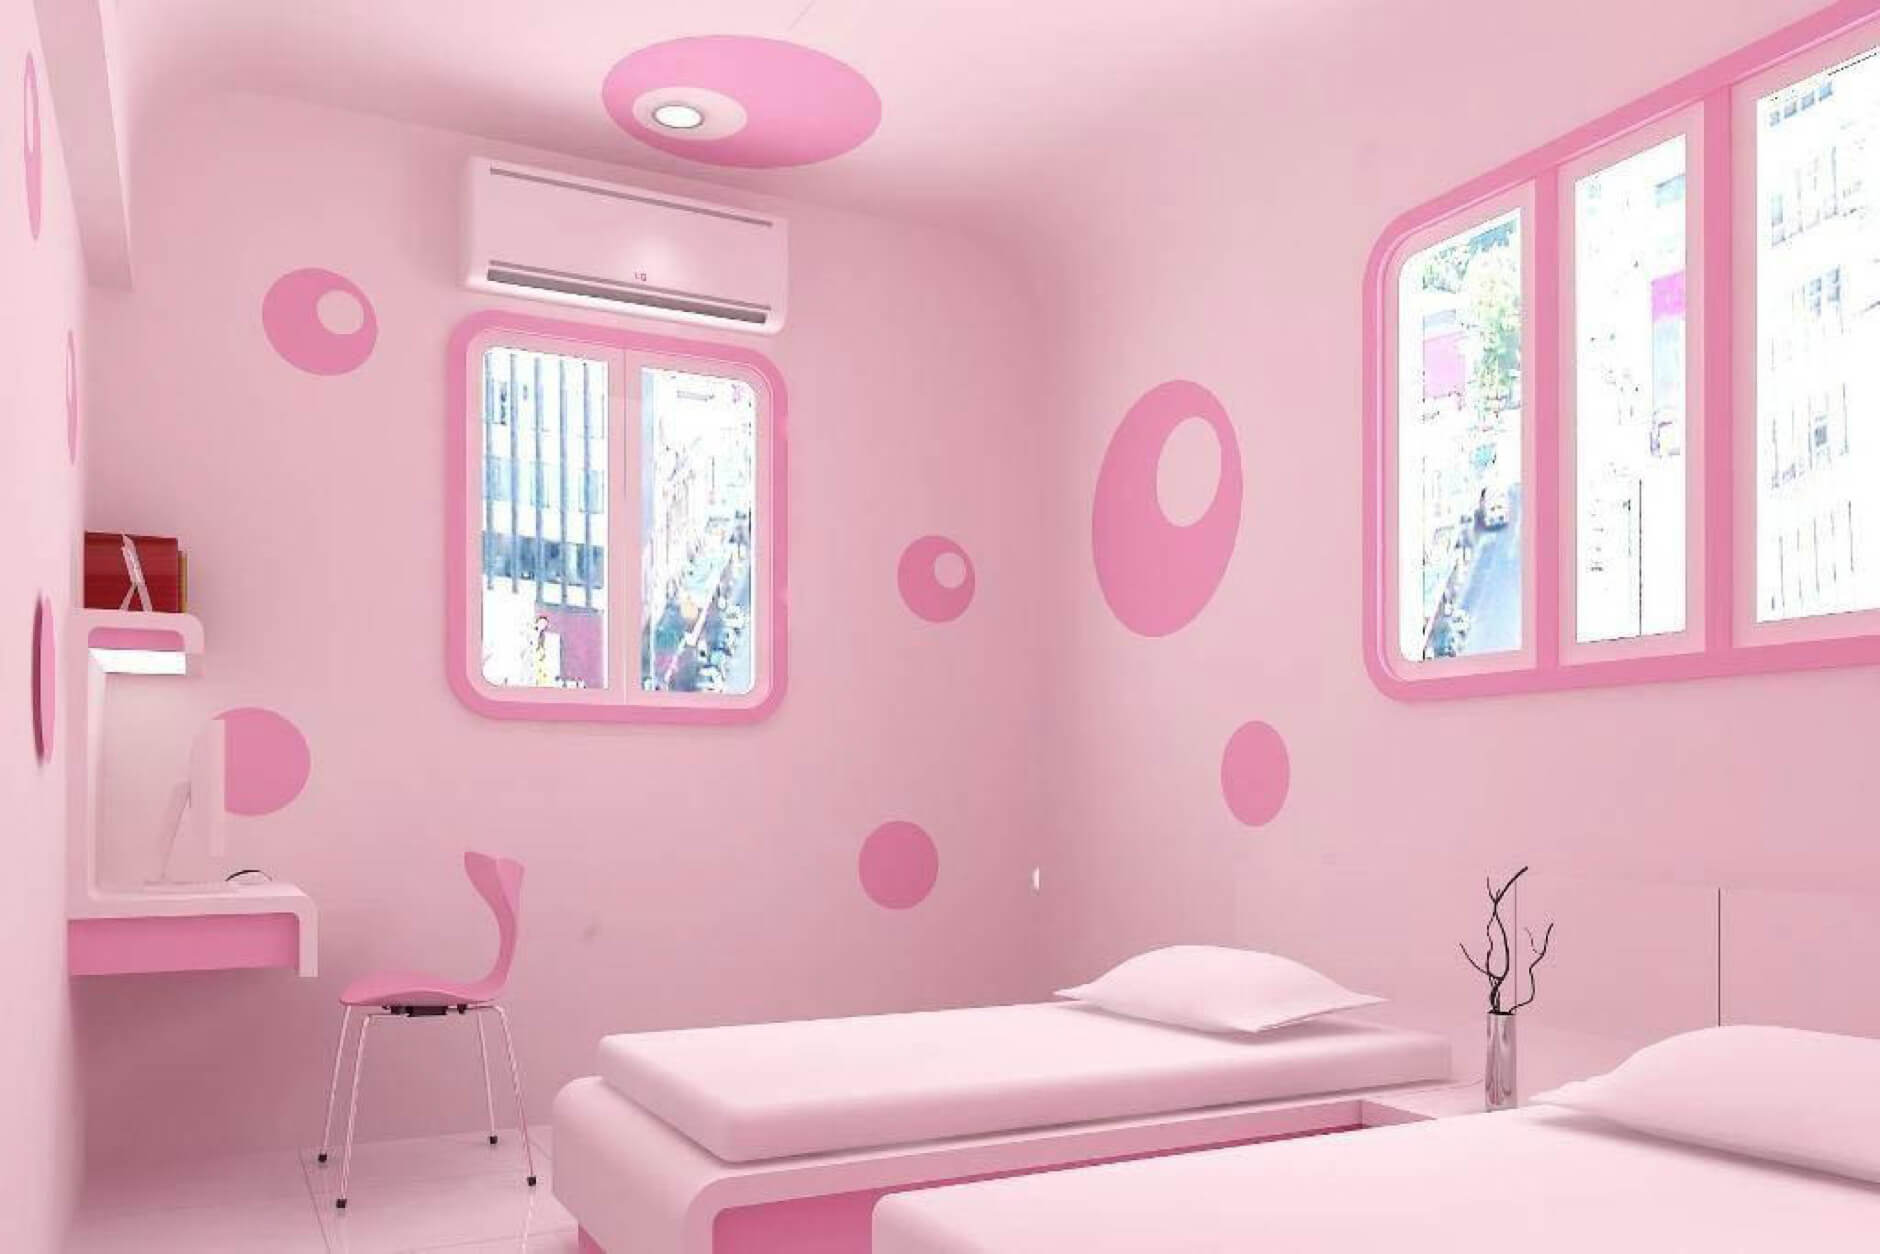 Vẽ tường phòng ngủ cute màu hồng cho bé